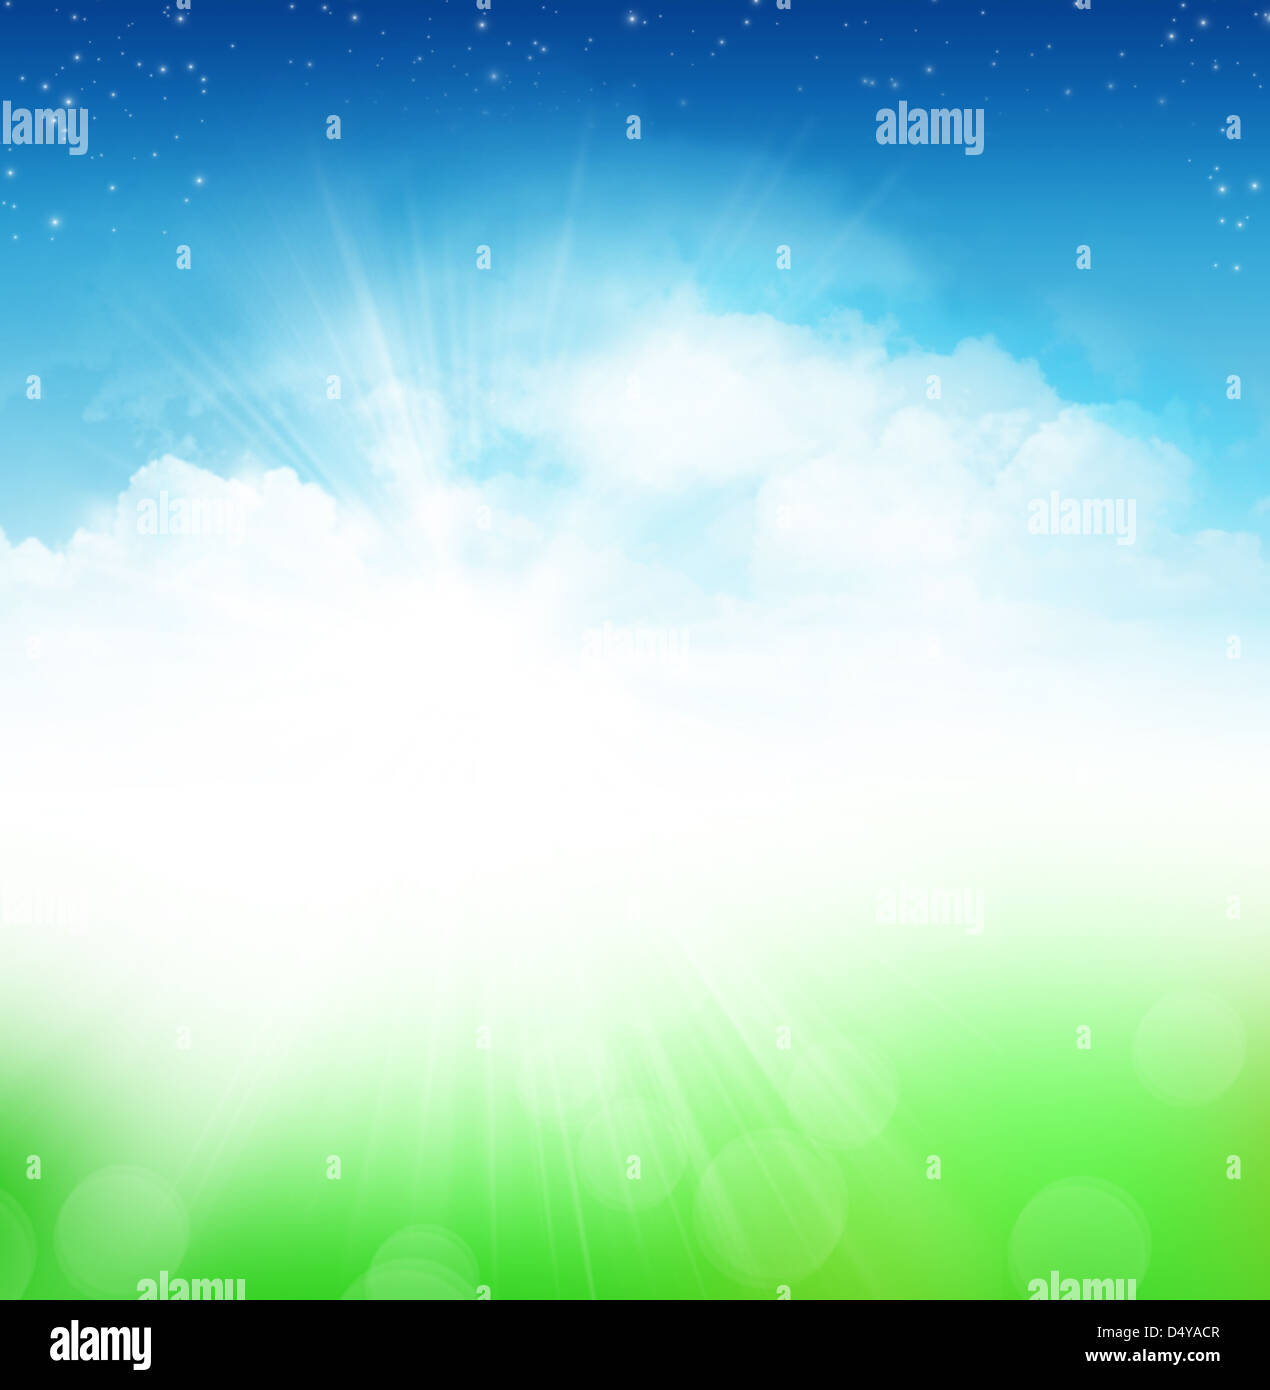 Ciel nuageux Ciel bleu avec des étoiles et green field abstract background Banque D'Images